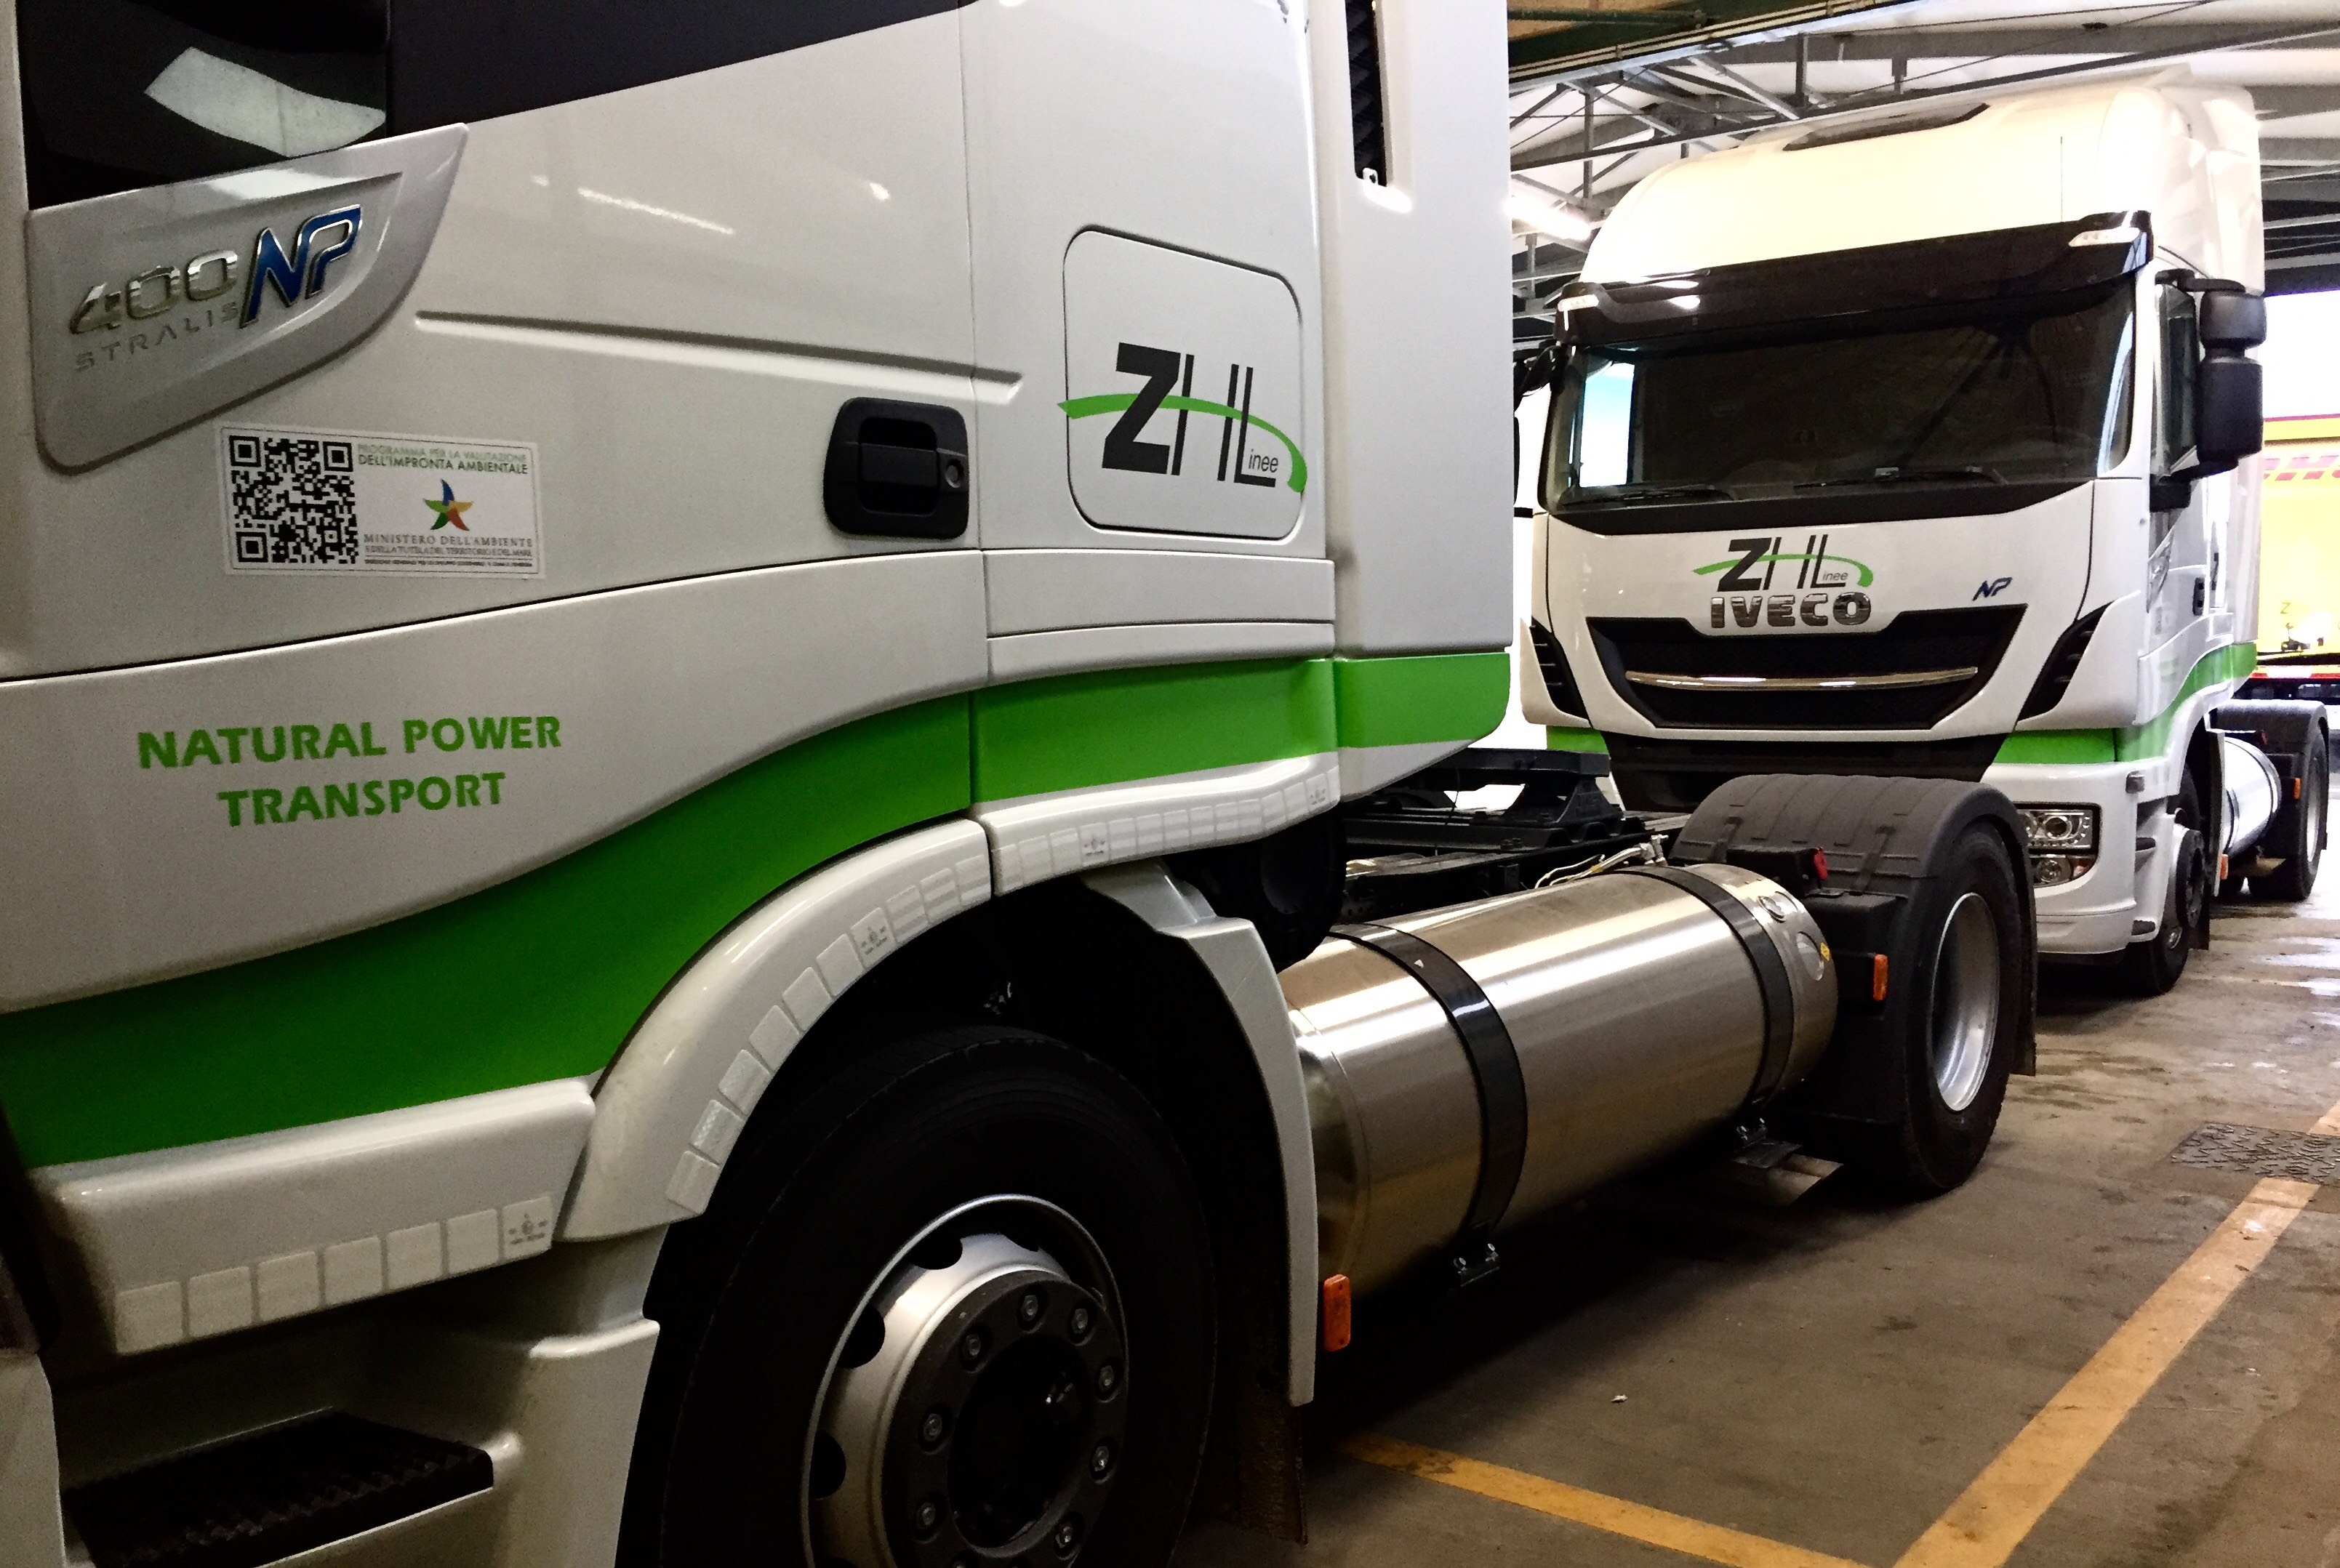 Zampieri Holding bilancia le emissioni dei suoi 300 camion finanziando progetti sostenibili. Un’alternativa per i trasporti green